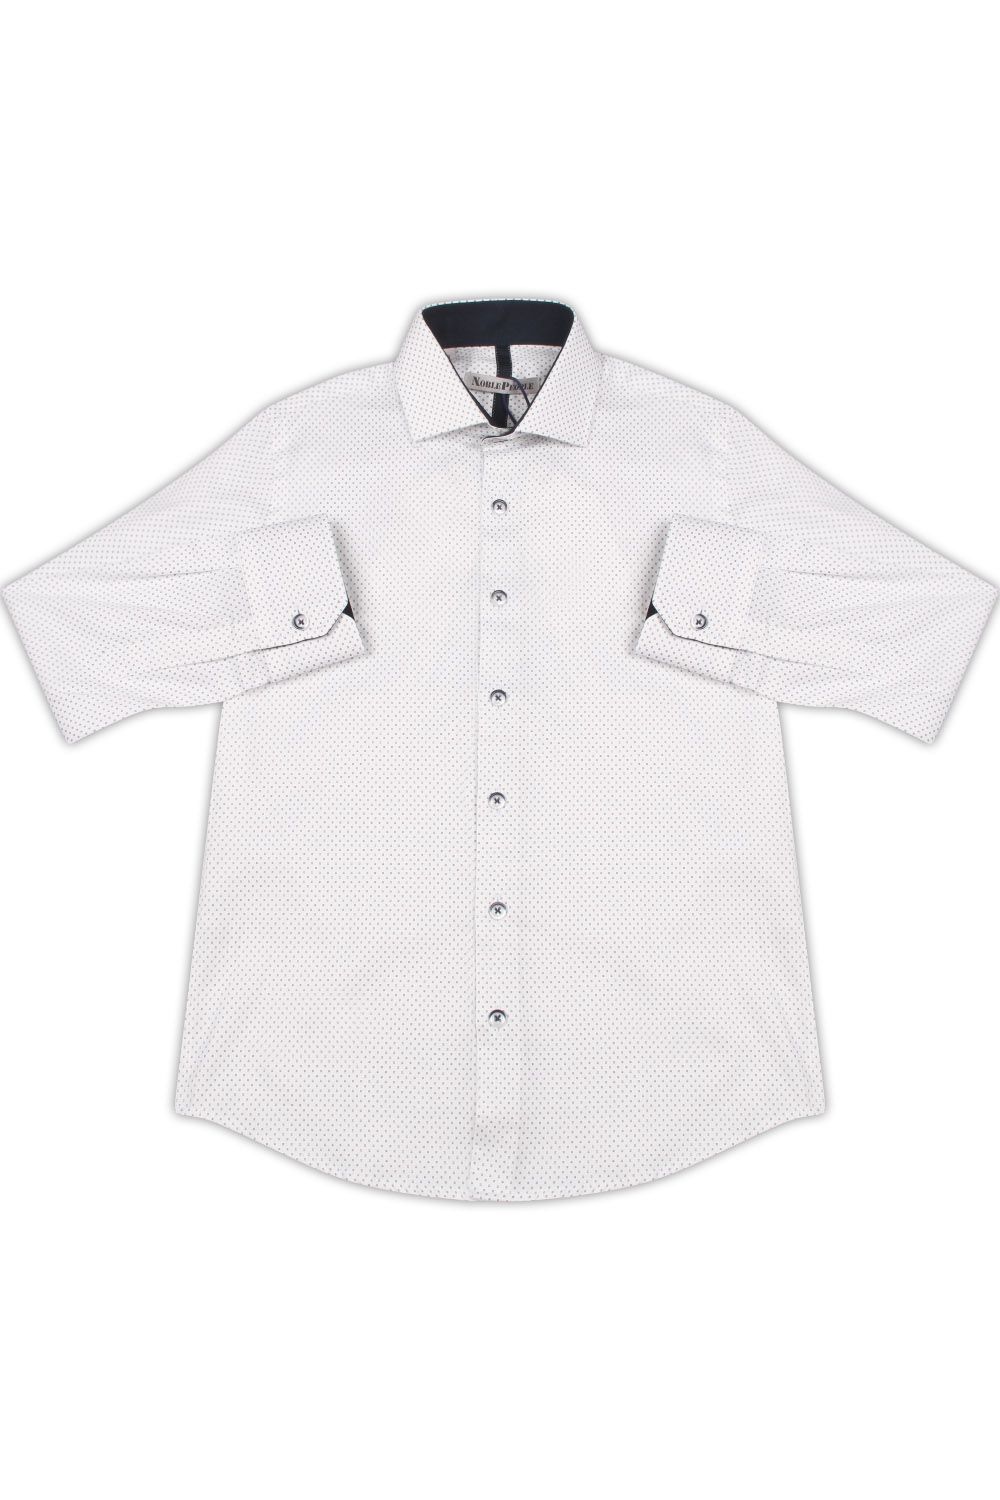 Рубашка Noble People, размер 158, цвет белый 19003-208 - фото 1